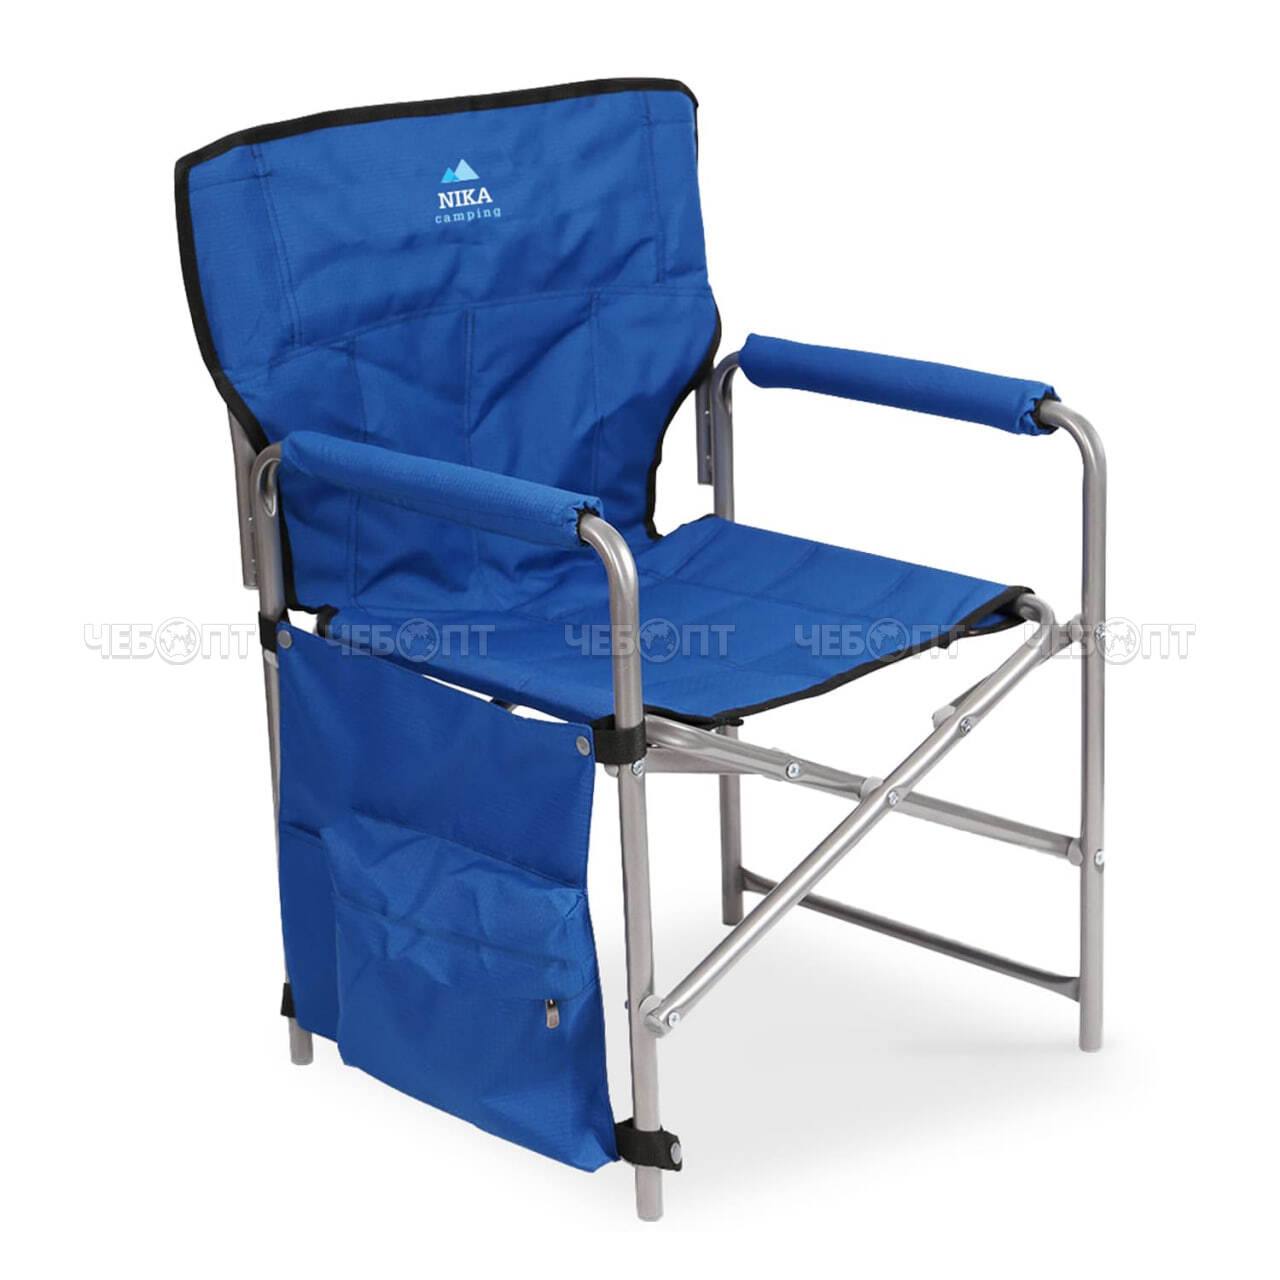 Кресло - складное 490*550*820 мм,  нагрузка 120 кг, с навесным карманом, ткань-водоотталкивающая  пропитка арт. КС2 NIKA [2]. ЧЕБОПТ.